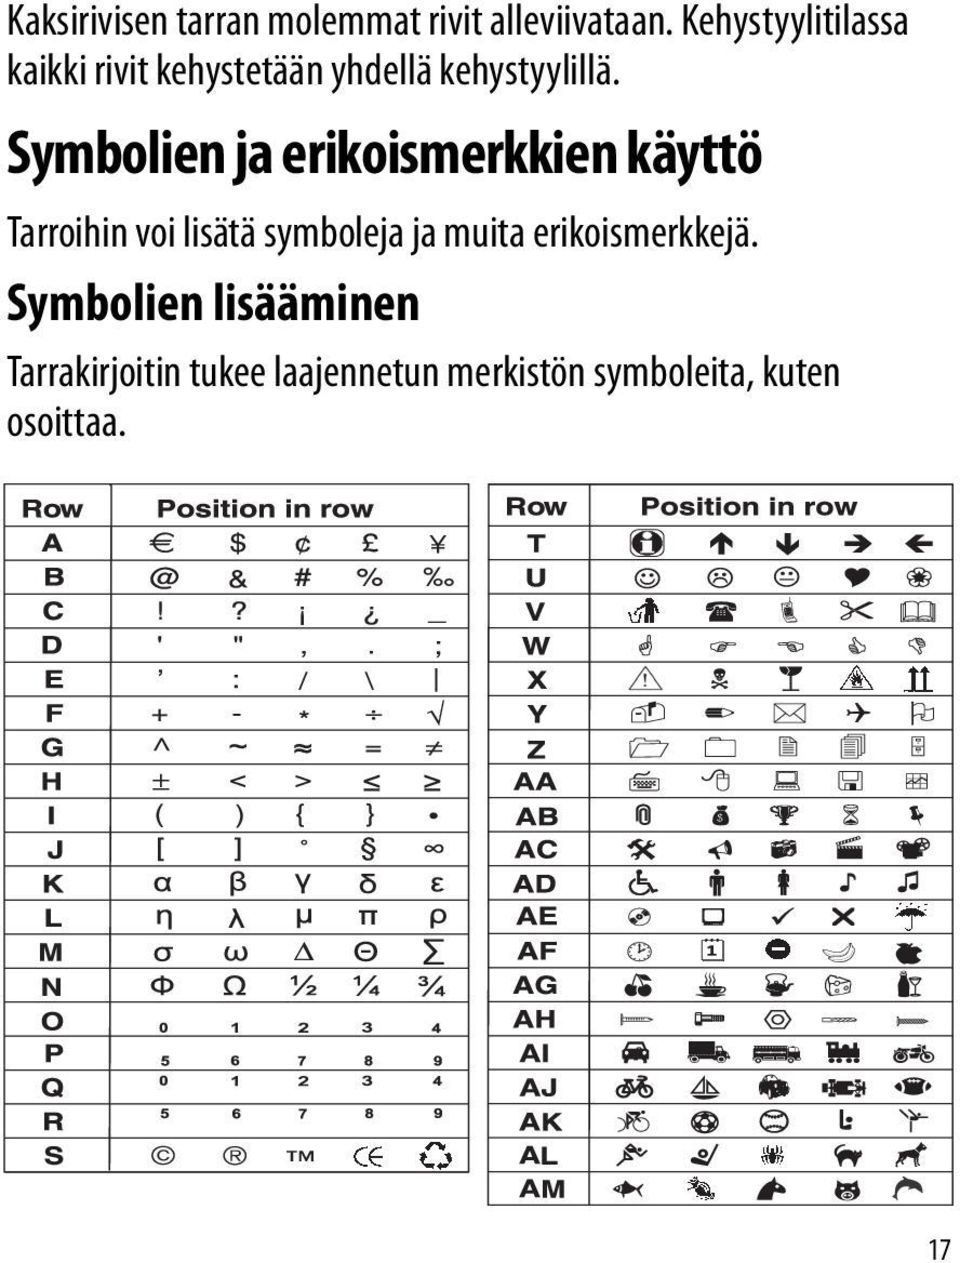 Symbolien ja erikoismerkkien käyttö Tarroihin voi lisätä symboleja ja muita